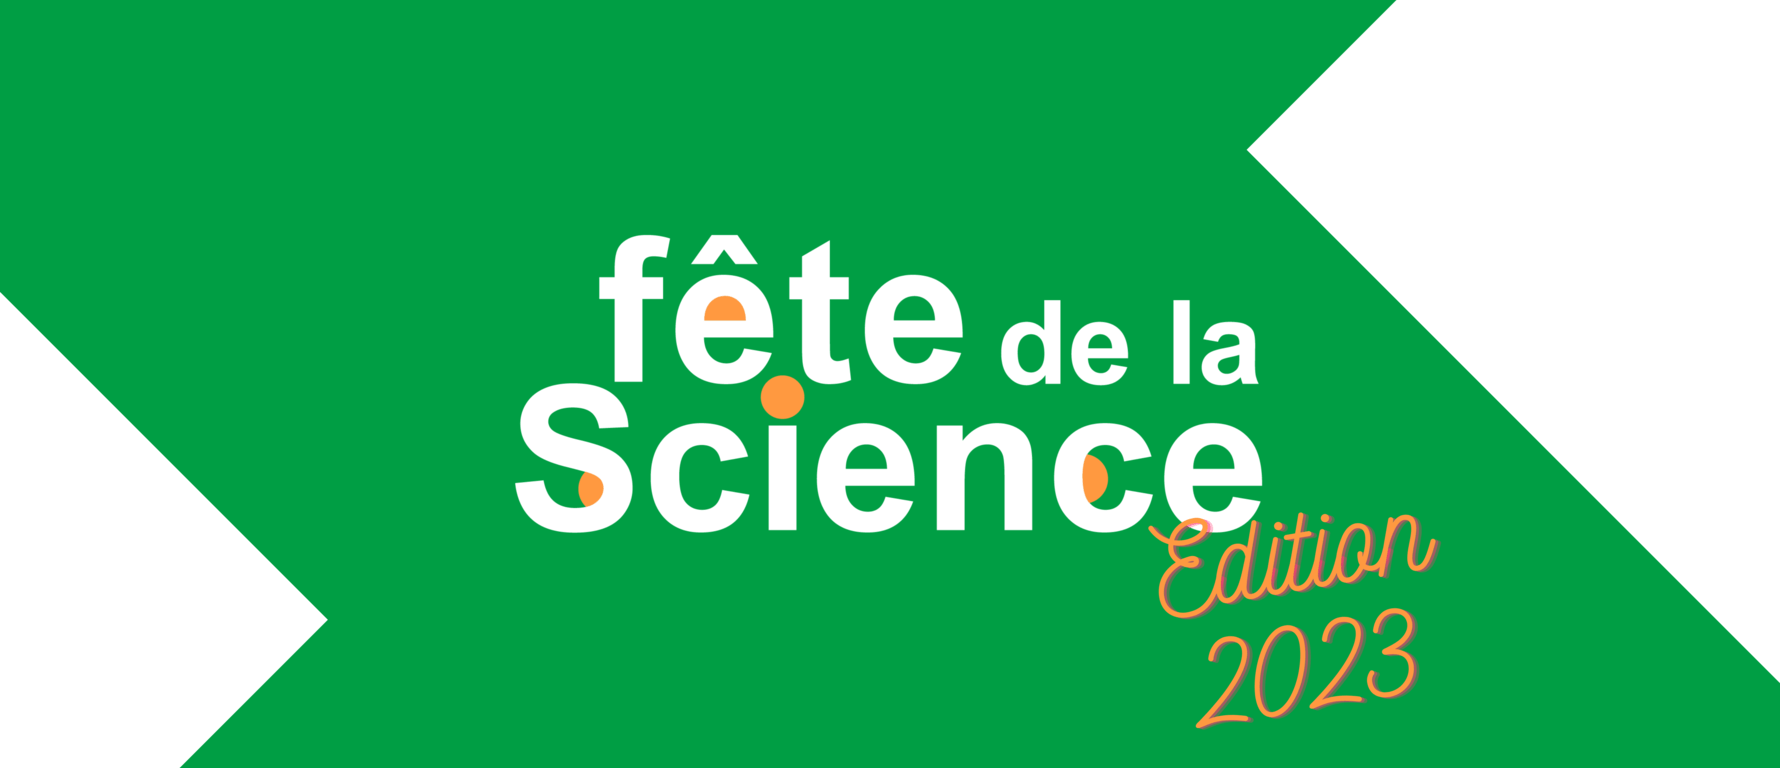 Fête de la Science 2023 : Appel à participation